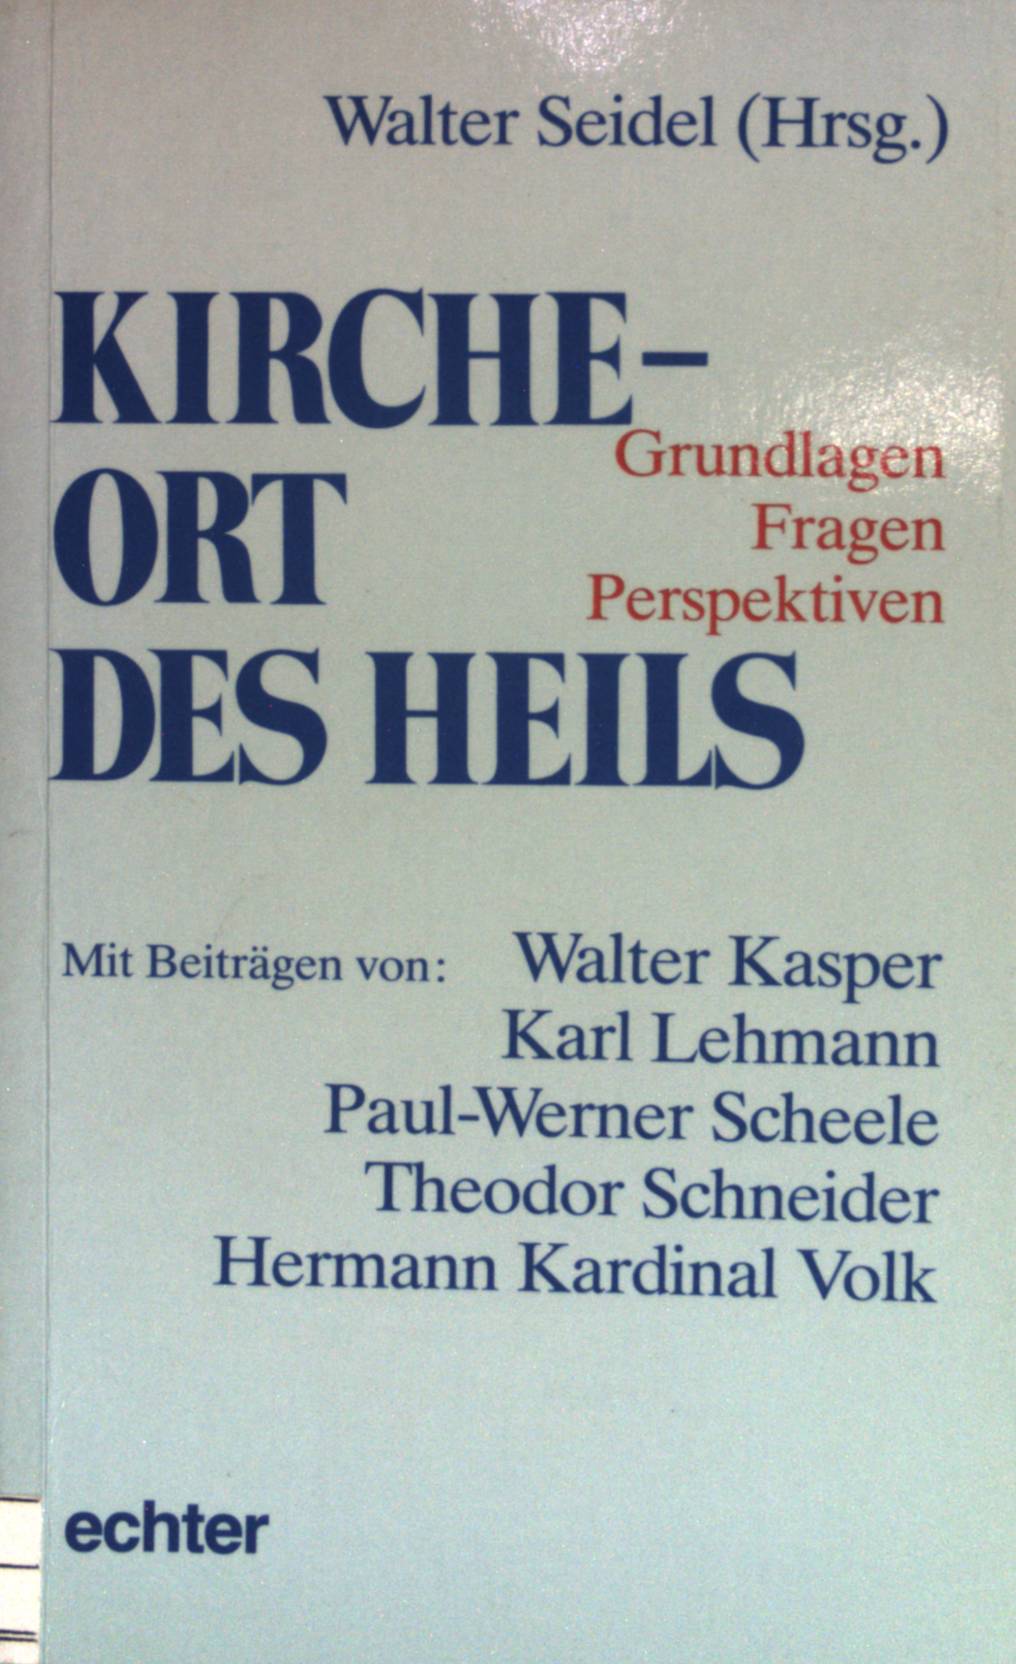 Kirche - Ort des Heils : Grundlagen - Fragen - Perspektiven. - Seidel, Walter (Hrsg.)